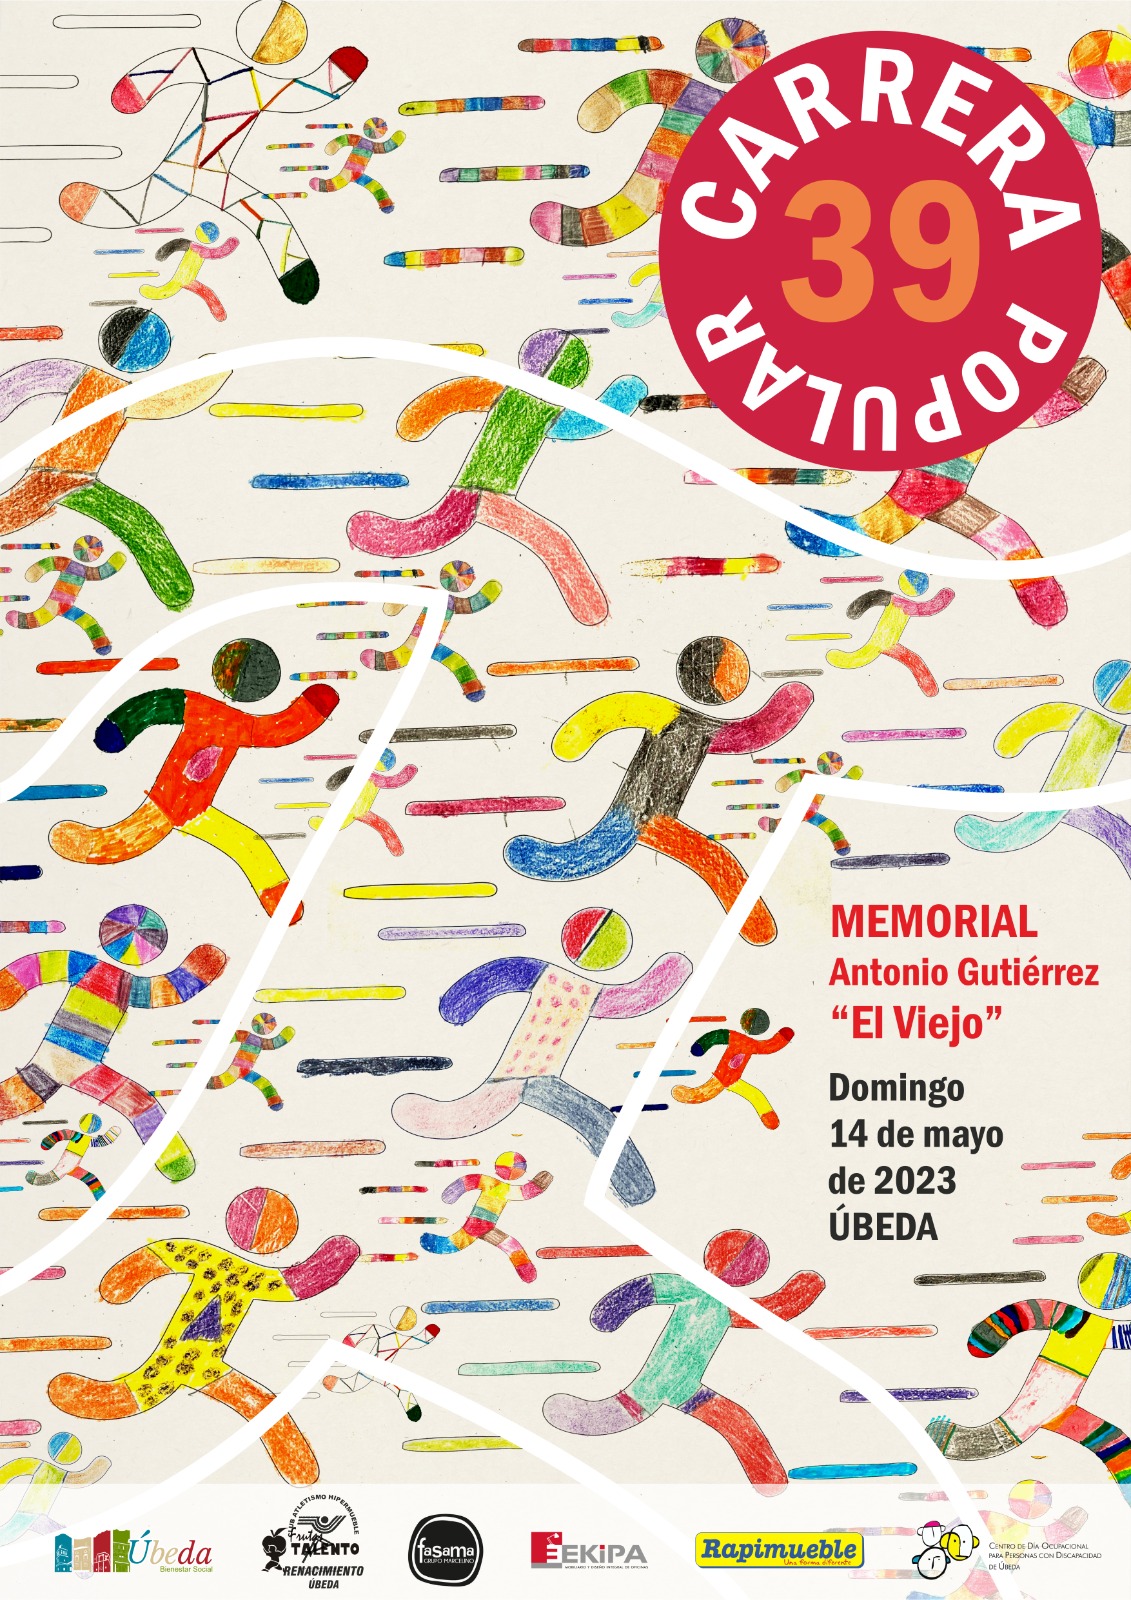 39 edición de la Carrera Popular Memorial Antonio Gutiérrez "El viejo" 2023